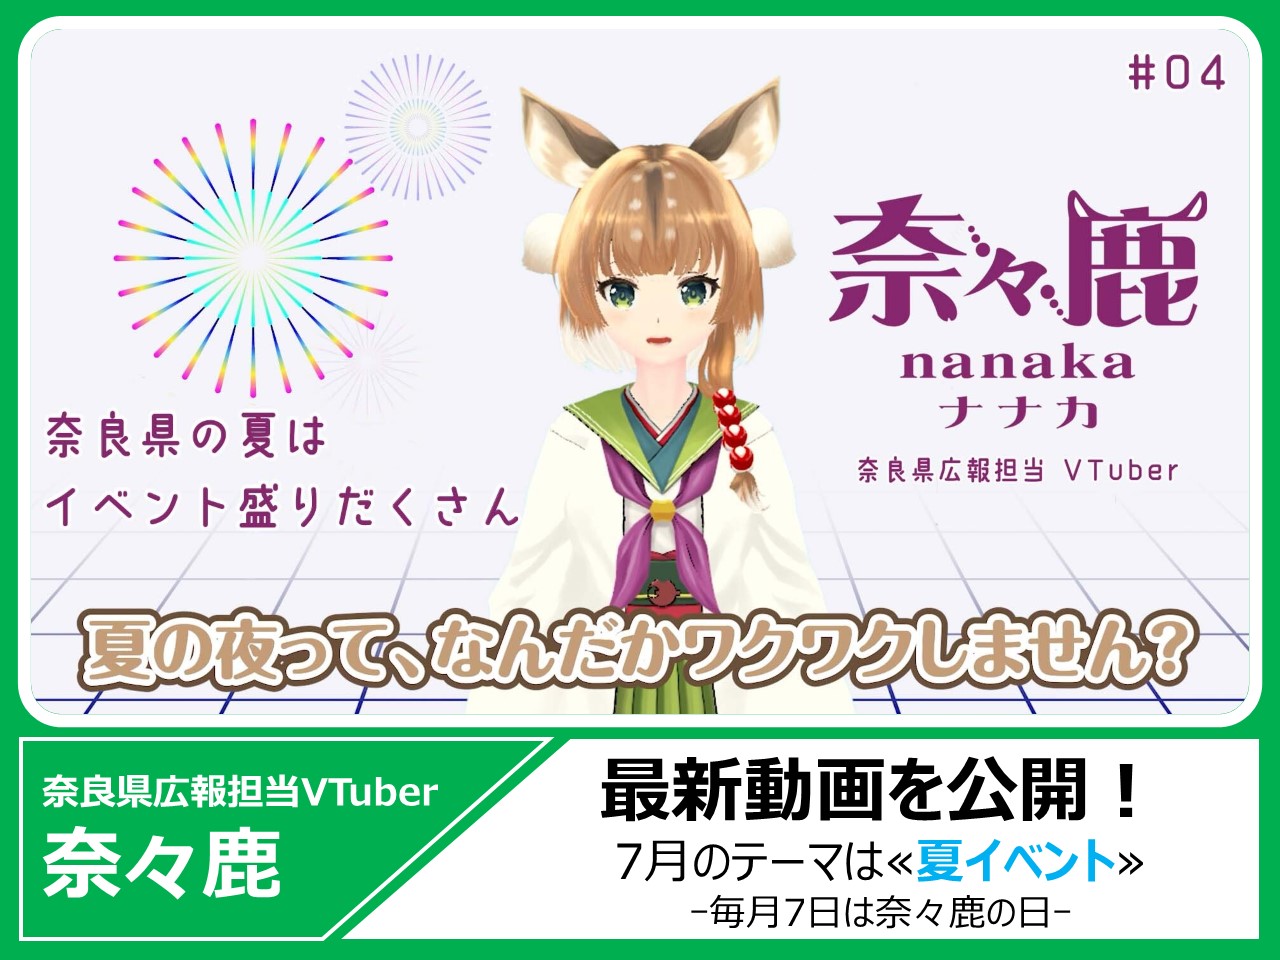 奈良県広報担当VTuber奈々鹿の最新動画をYouTubeで見る